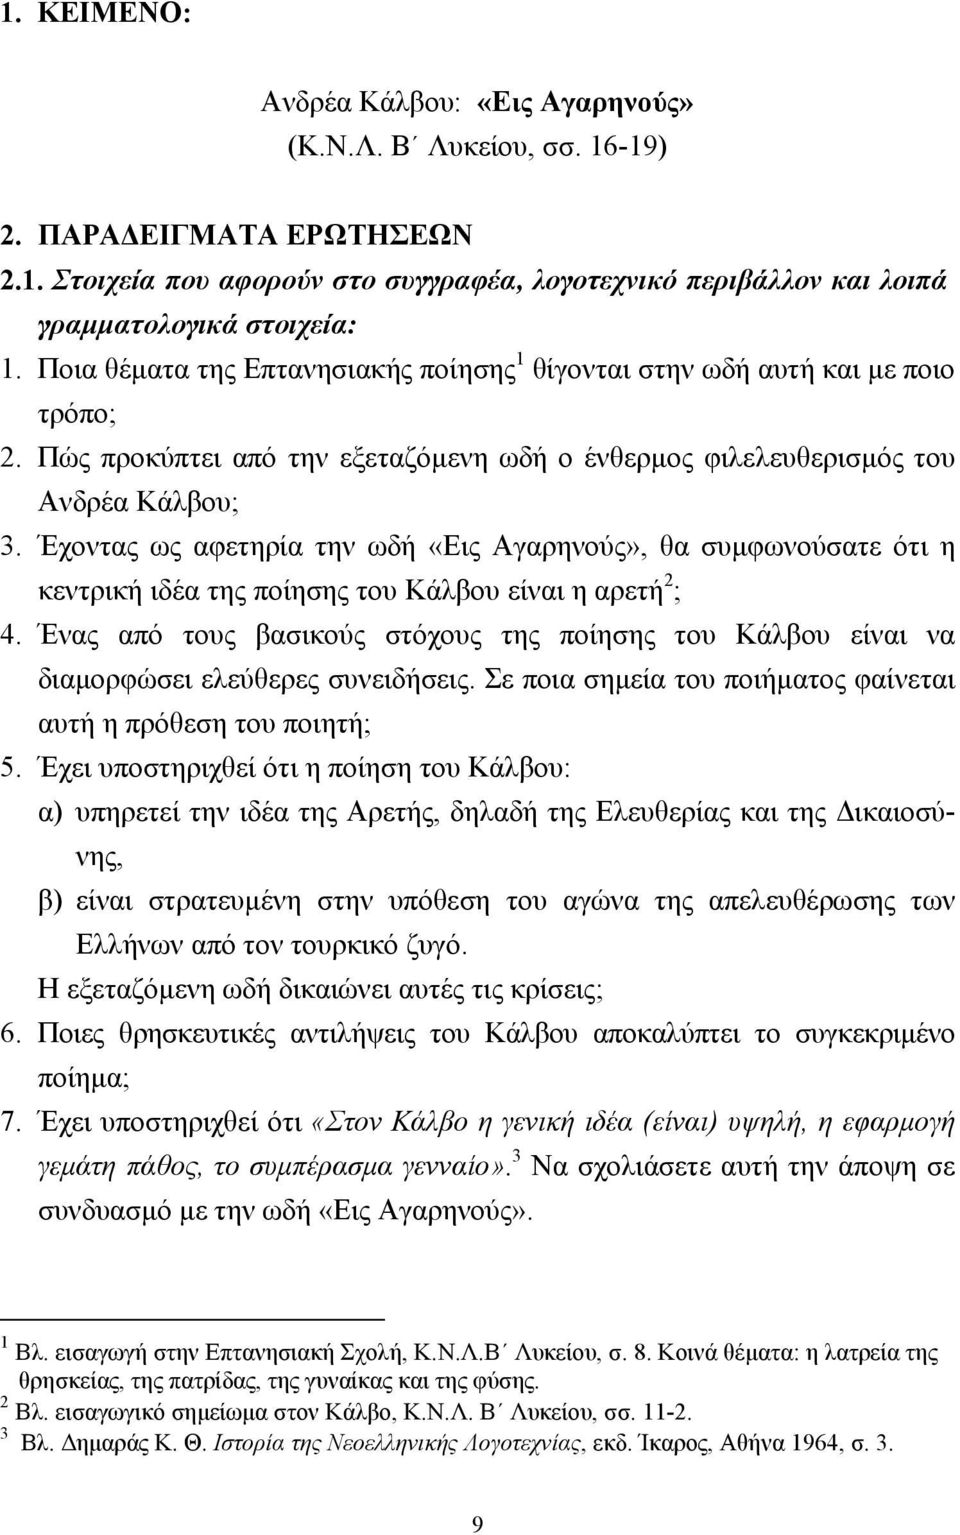 Έχοντας ως αφετηρία την ωδή «Εις Αγαρηνούς», θα συµφωνούσατε ότι η κεντρική ιδέα της ποίησης του Κάλβου είναι η αρετή 2 ; 4.